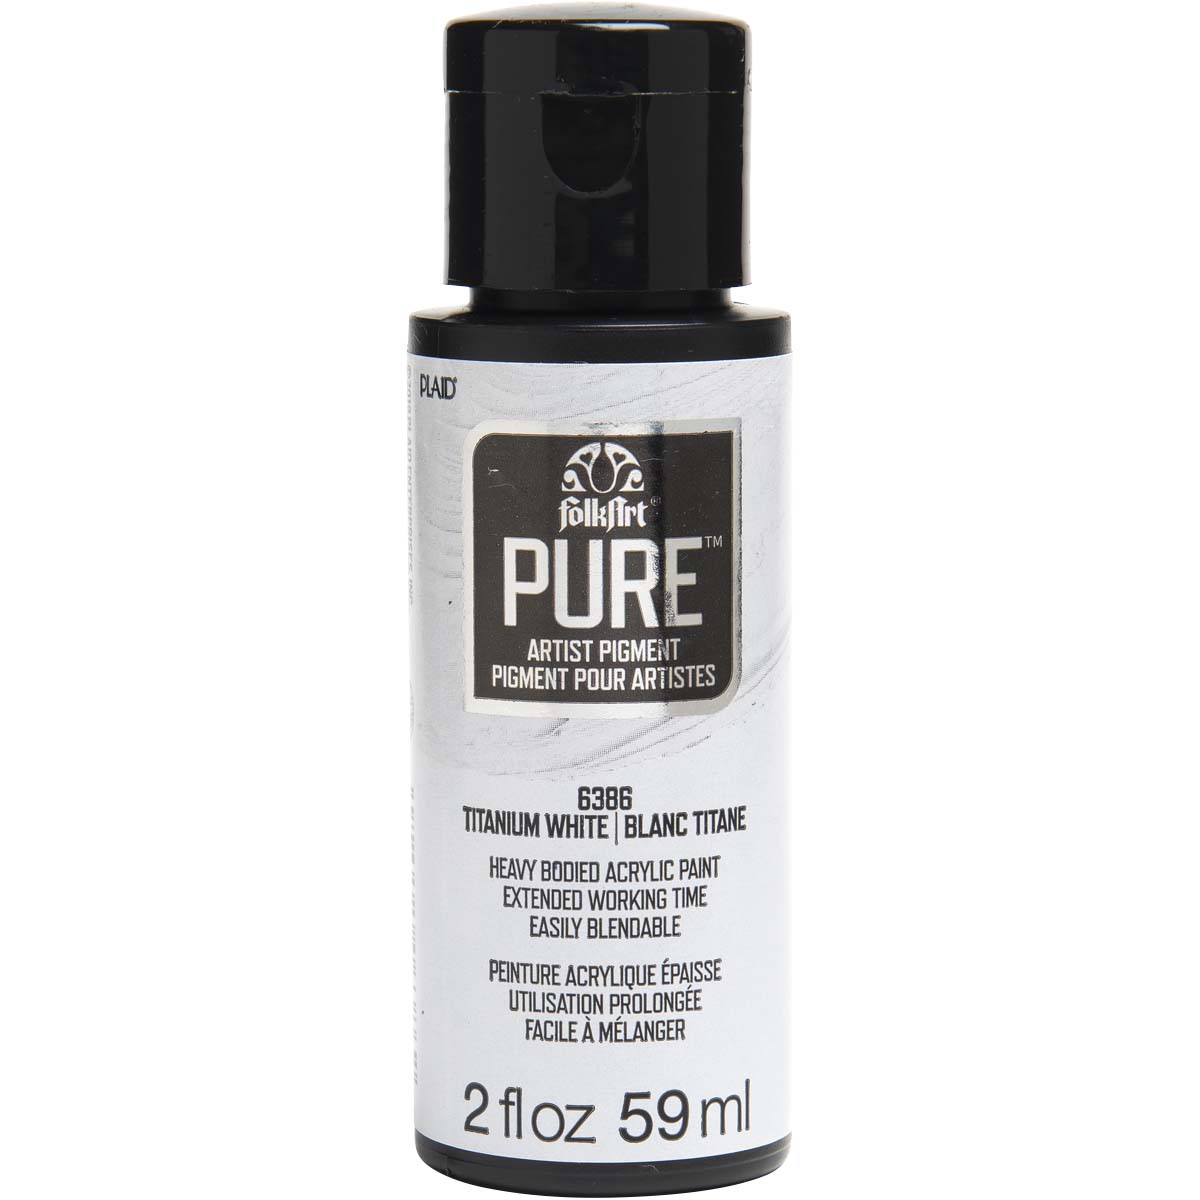 FolkArt ® Pure™ Artist Pigment - Titanium White, 2 oz. - 6386